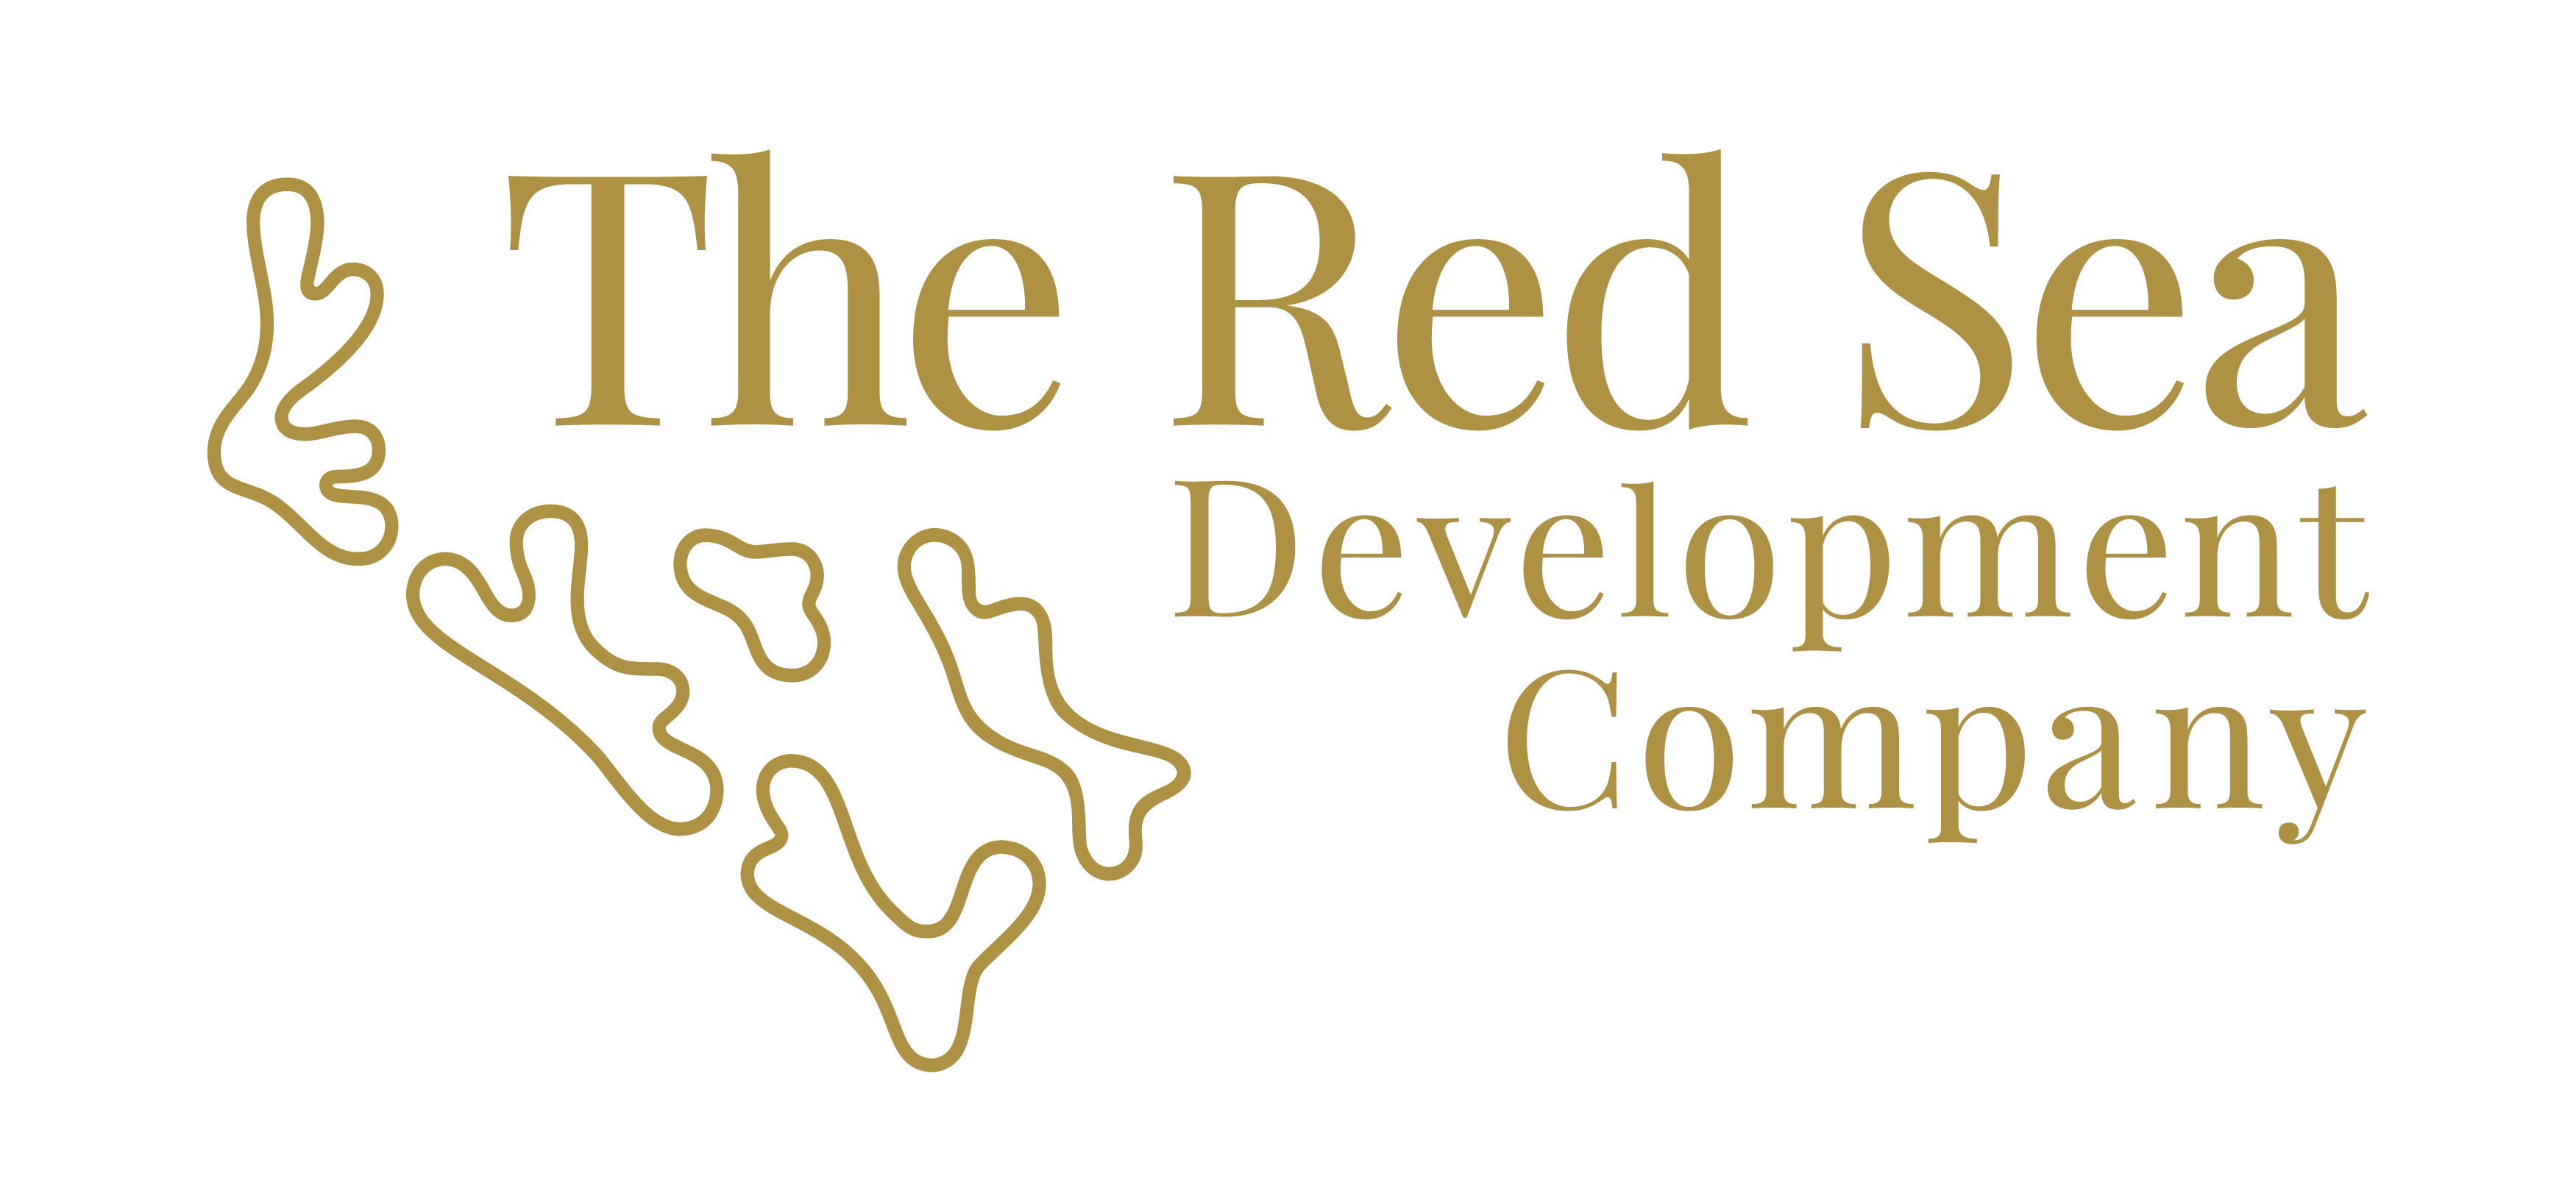 THE RED SEA DEVELOPMENT COMPANY